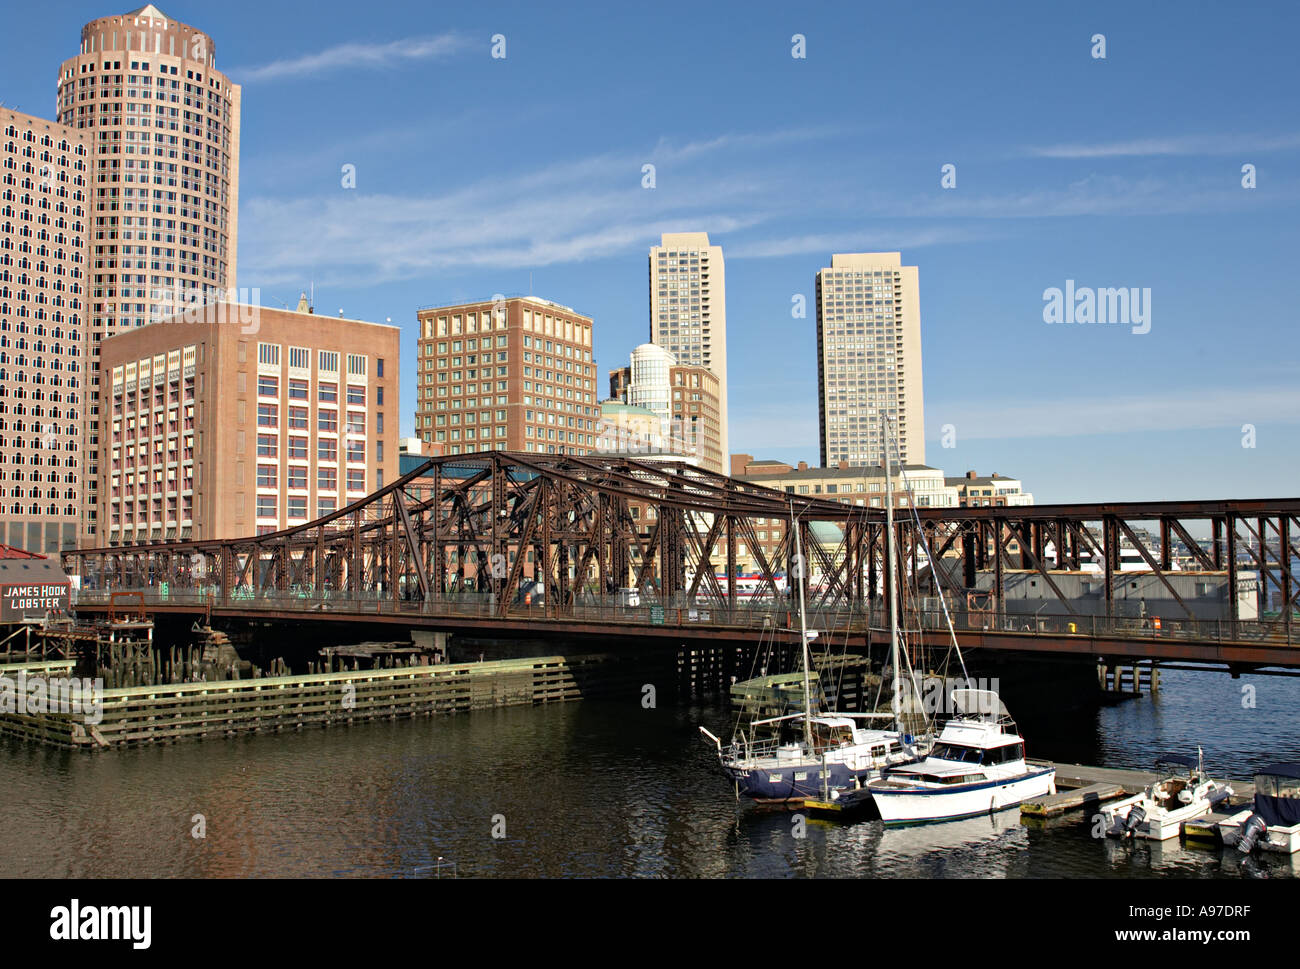 MASSACHUSETTS Boston Boats docked in inner harbor Seaport Boulevard bridge city skyline Stock Photo